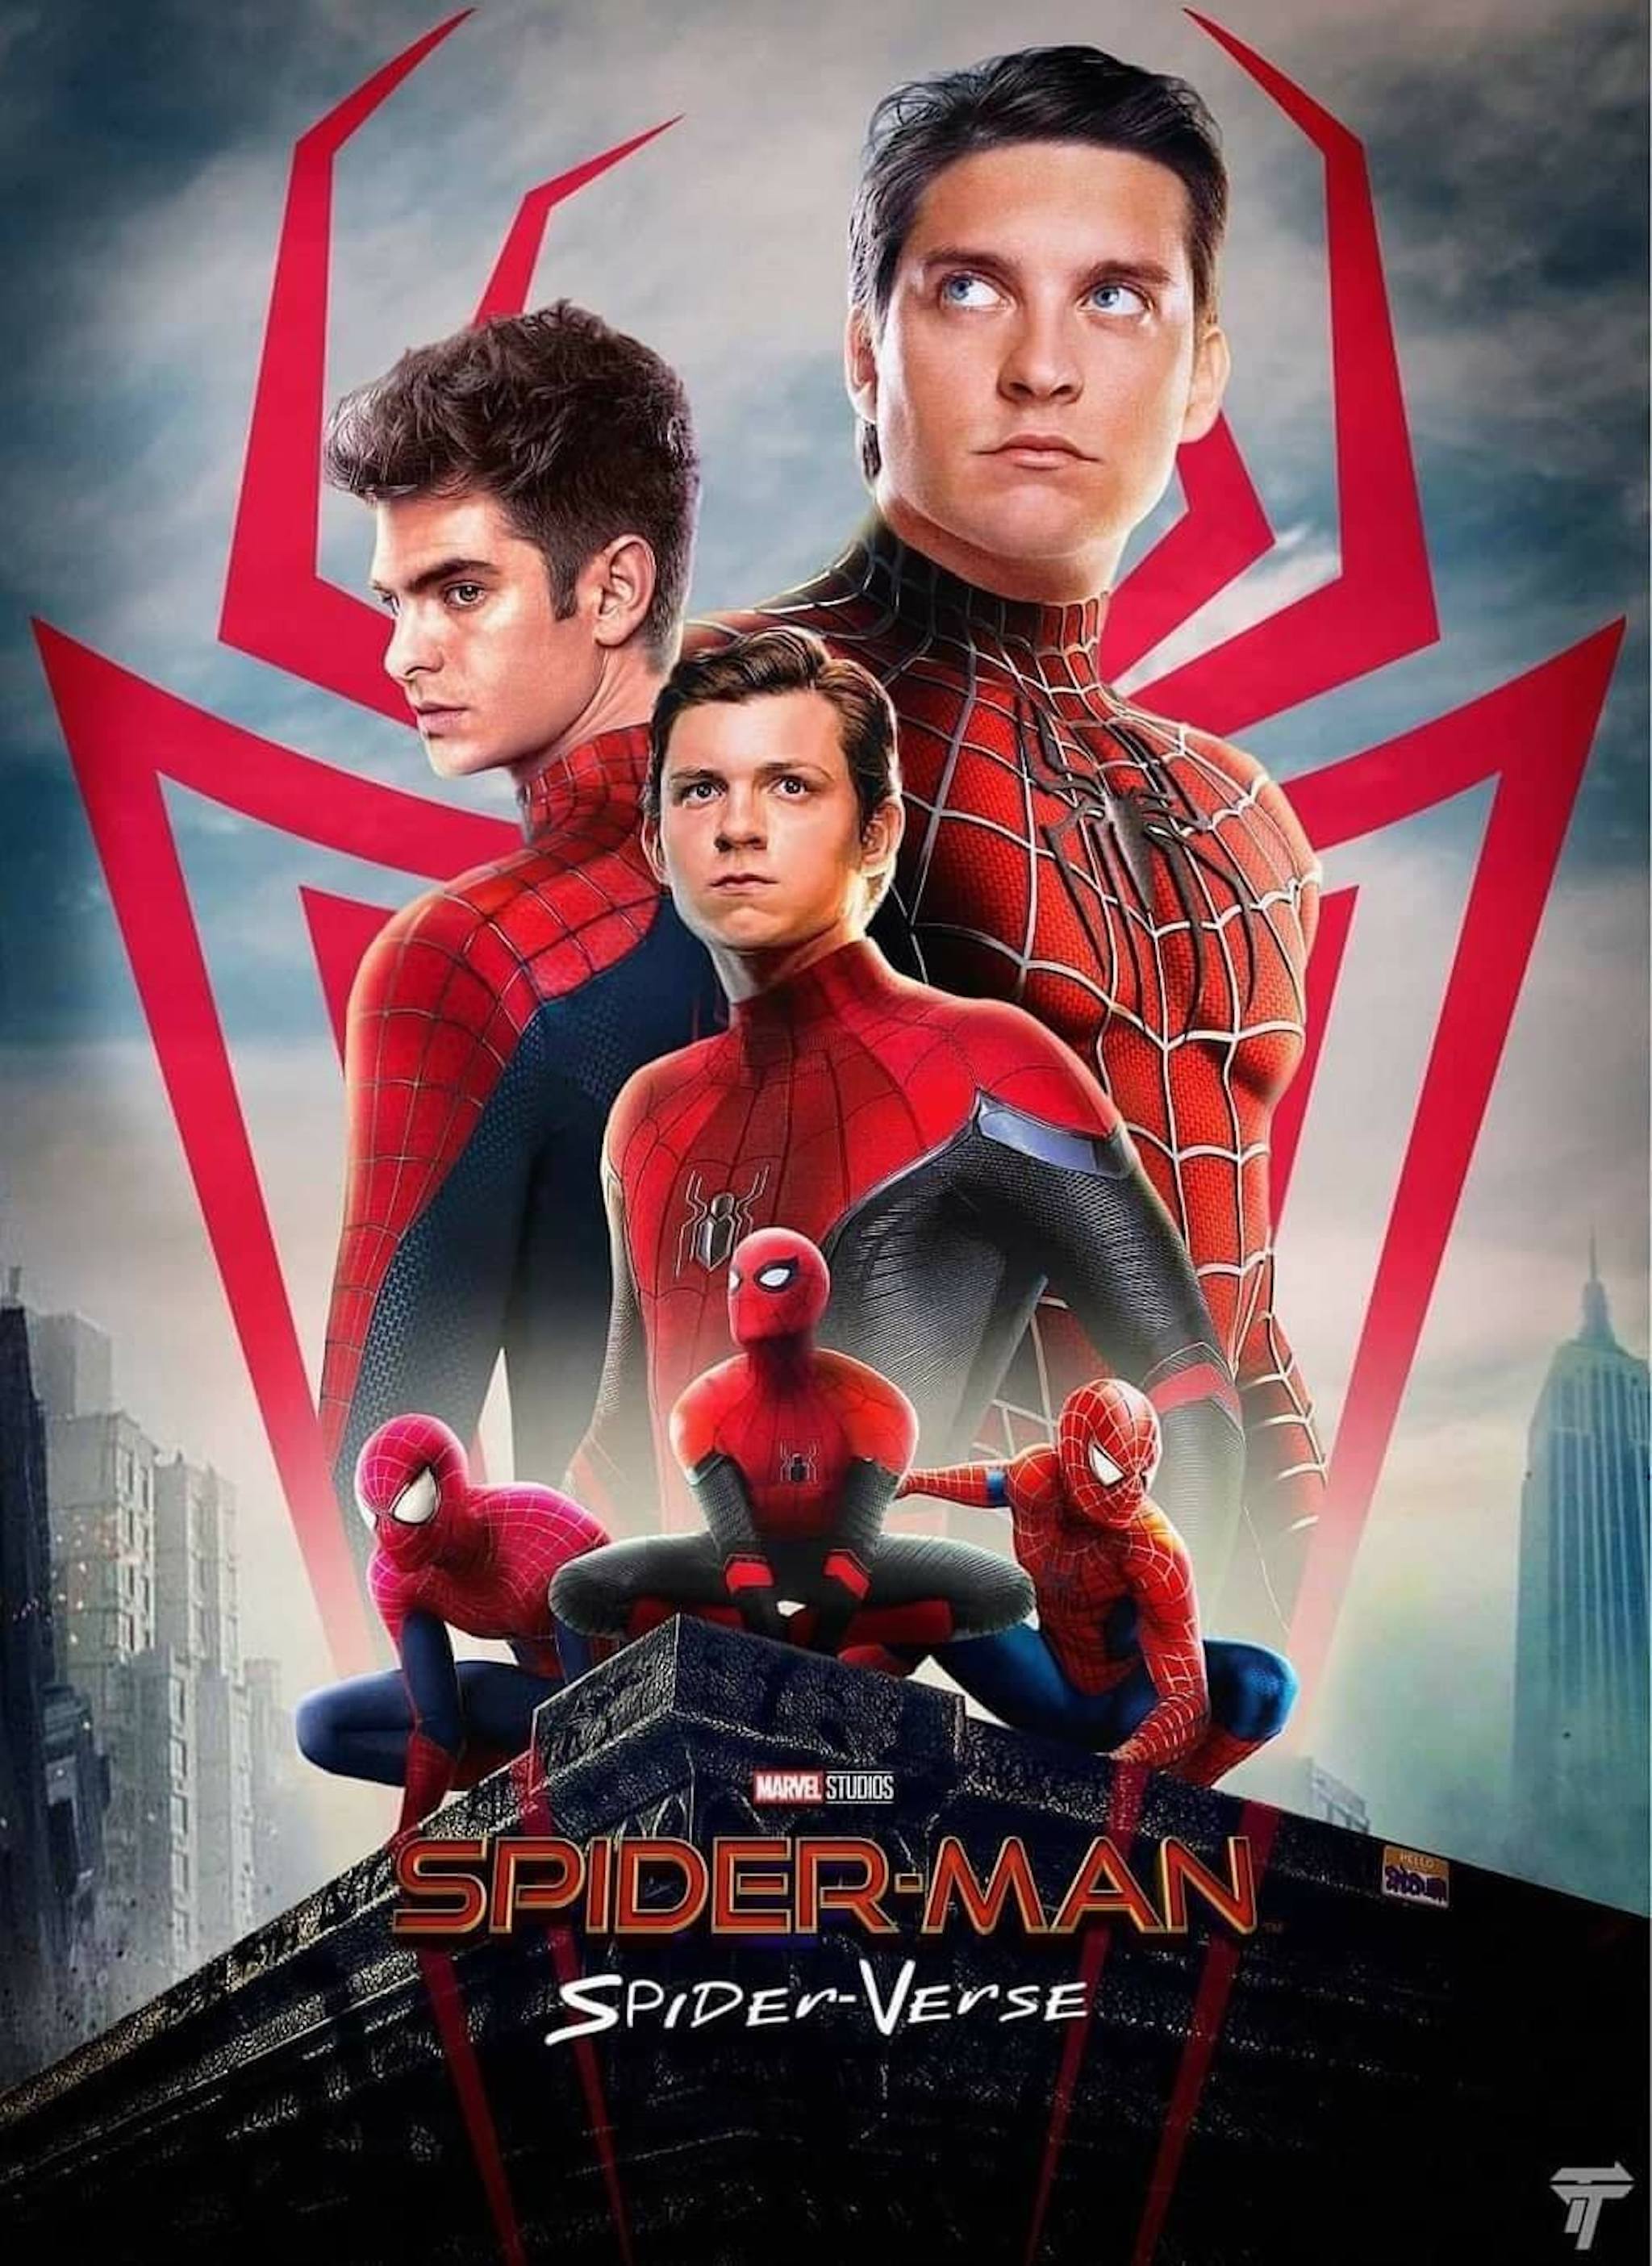 Andrew Garfield, Tobey Maguire, Spider Man và MCU đều là những chủ đề hấp dẫn trong giới điện ảnh. Bạn sẽ được chiêm ngưỡng những hiệu ứng đặc biệt đầy ấn tượng, và đón nhận những câu chuyện tuyệt đỉnh về siêu anh hùng đầy sức mạnh.